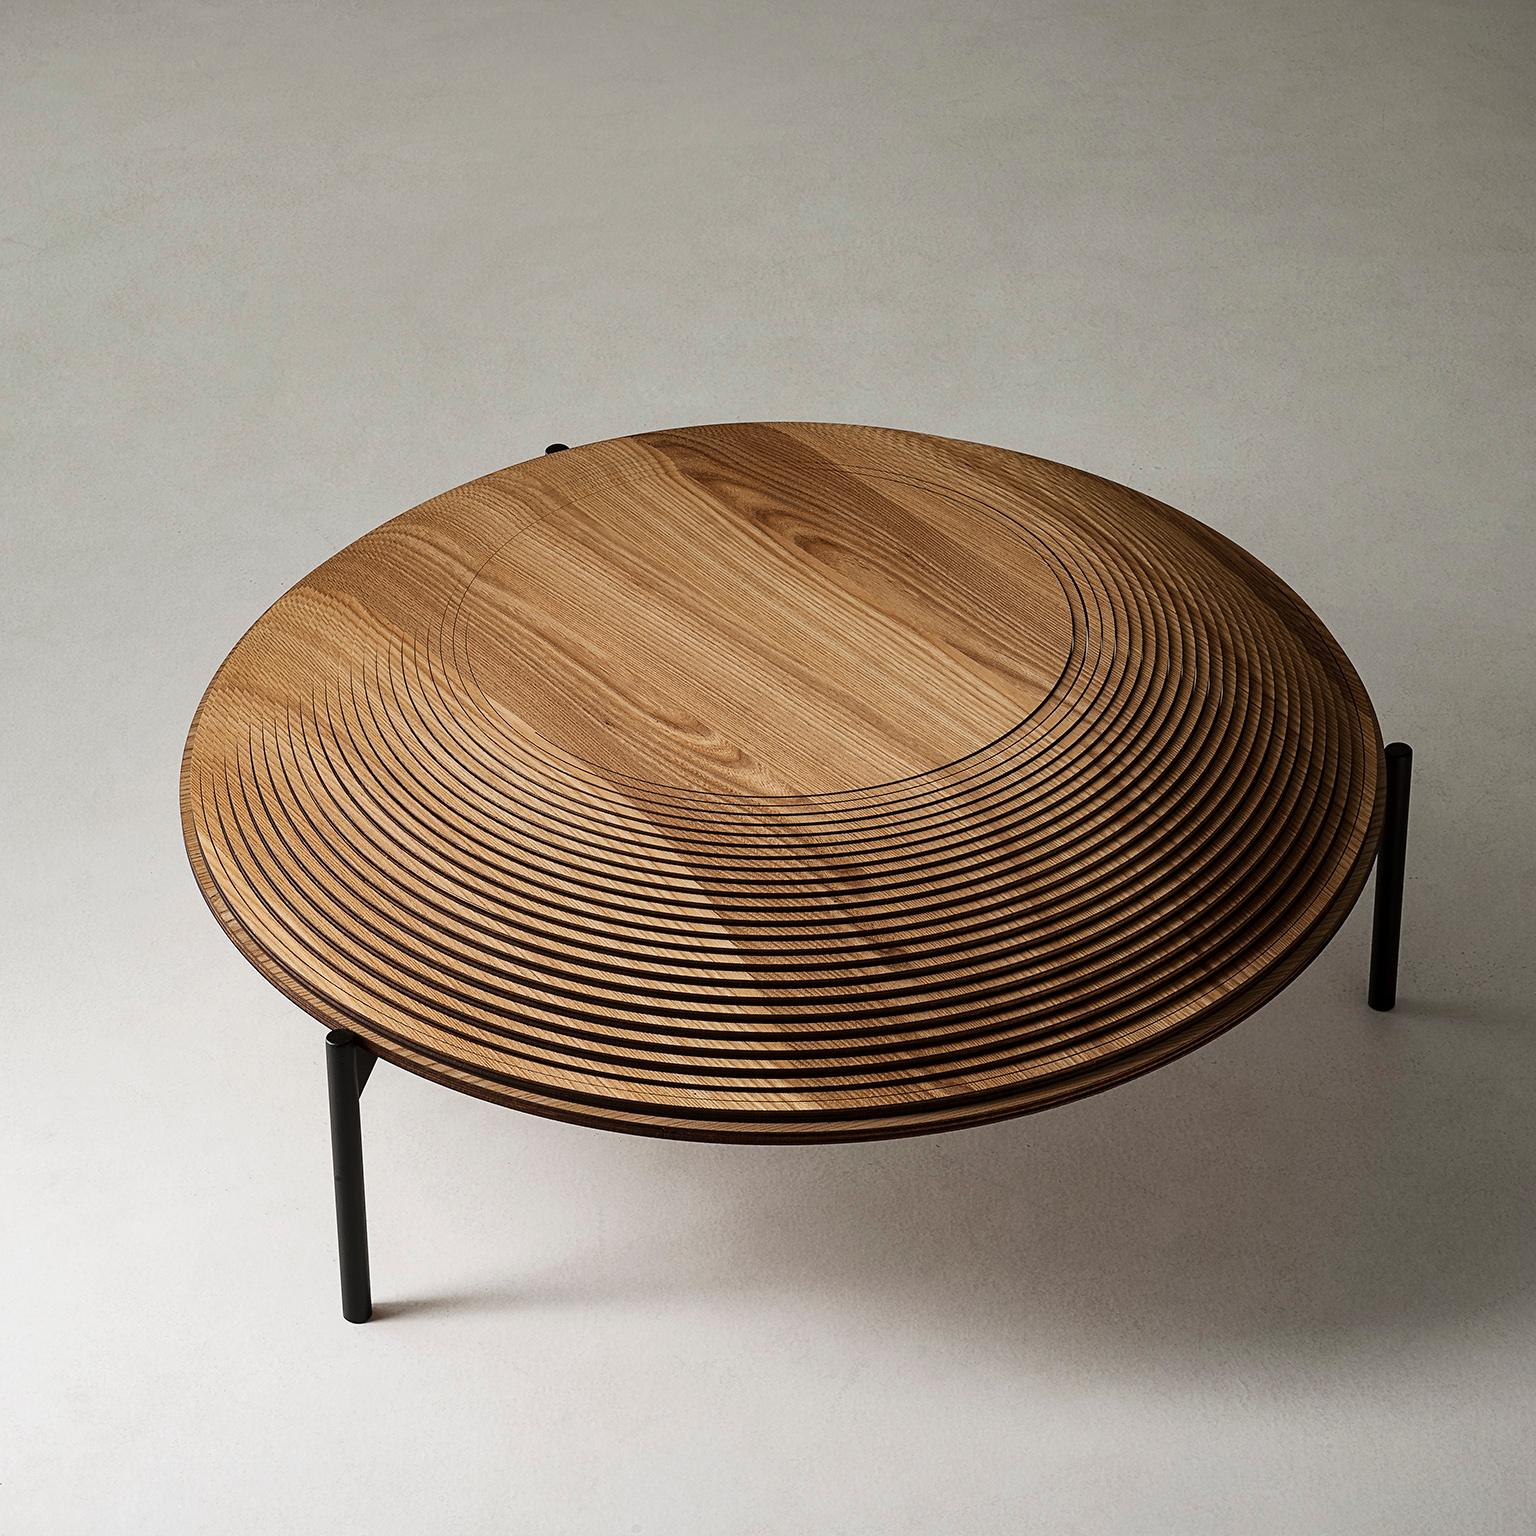 Cette magnifique table basse sculpturale ajoutera une décoration architecturale envoûtante dans un intérieur moderne tout en servant d'accent texturé dans une pièce. Fabriqué entièrement en bois selon une méthode innovante qui crée un effet